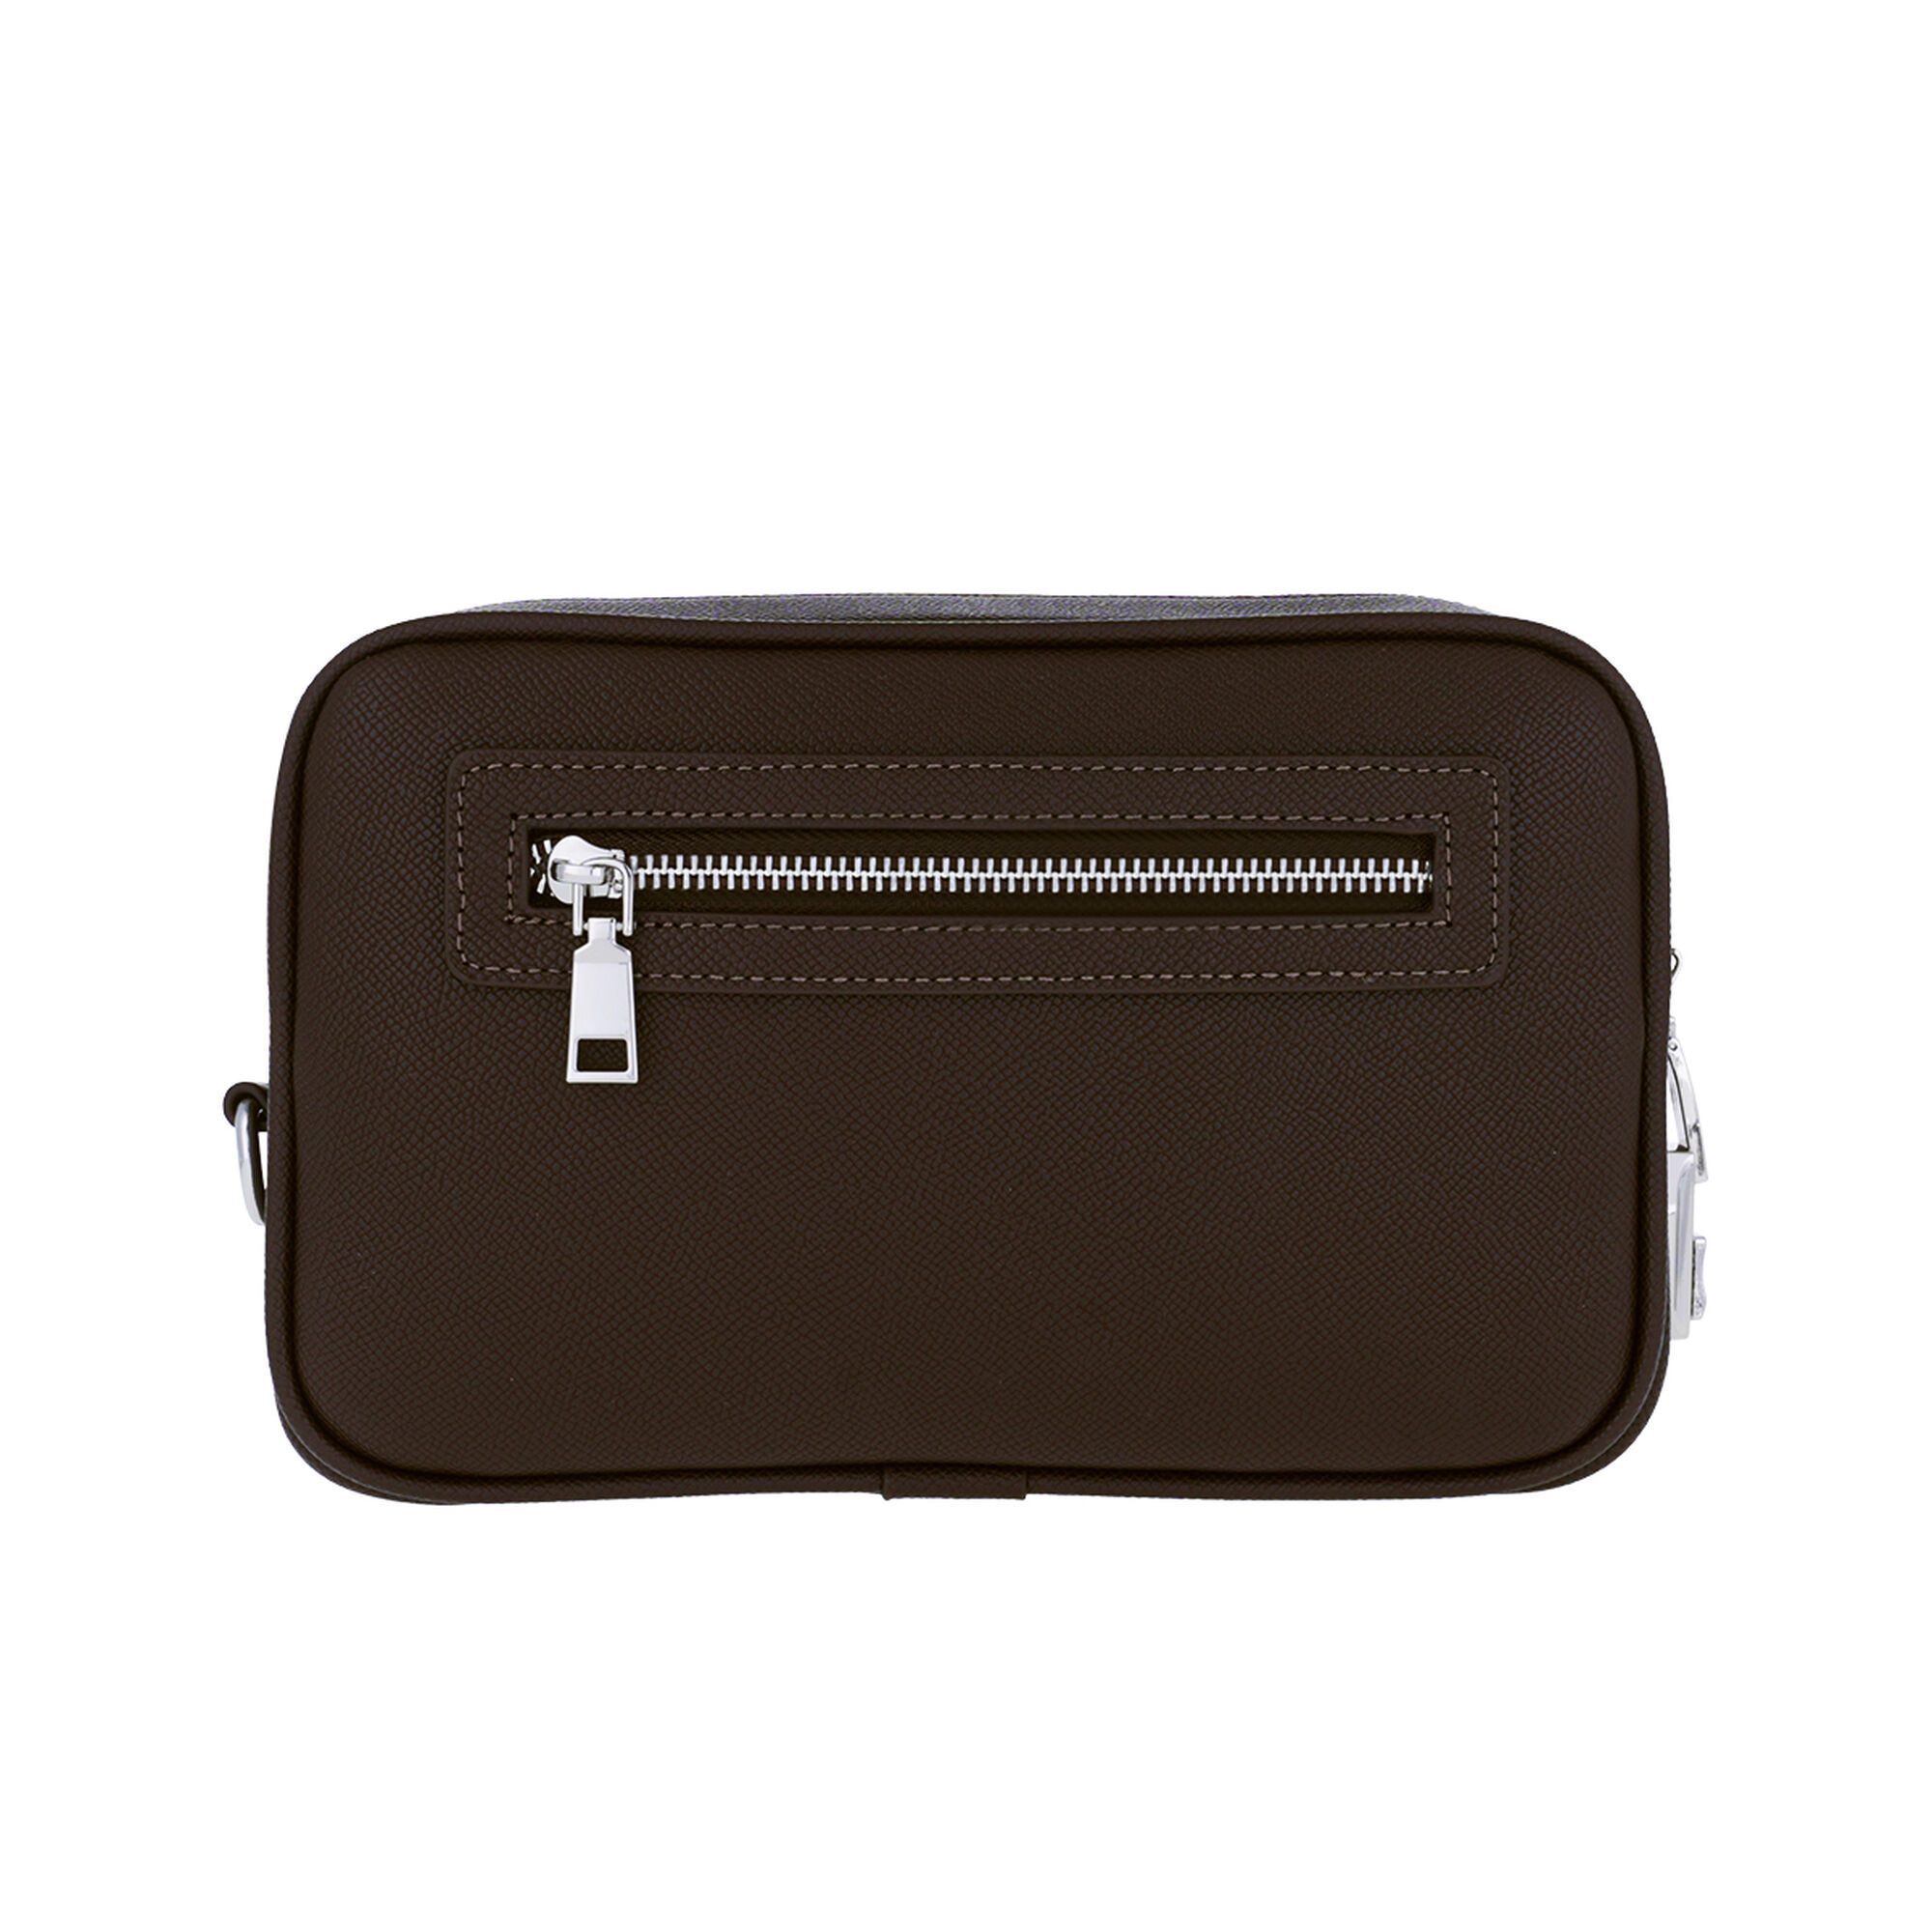 Proud Dark Brown Men's Handbag L23050911-B